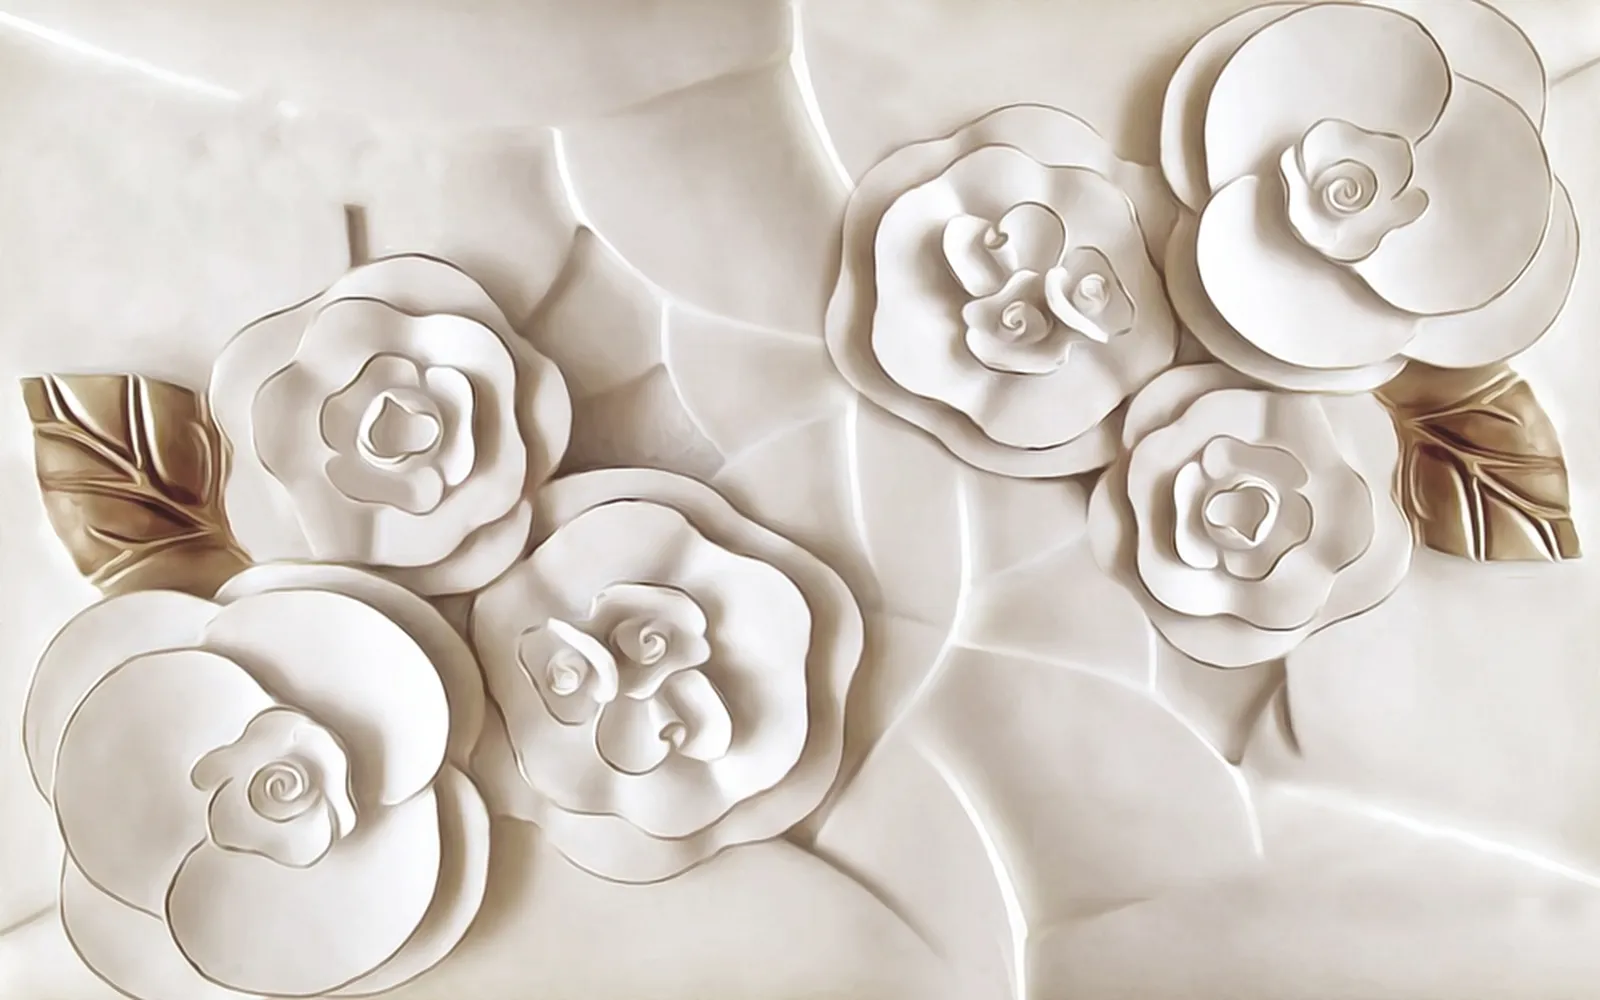 کاغذ دیواری اتاق خواب عروس و داماد طرح گل های مرمری